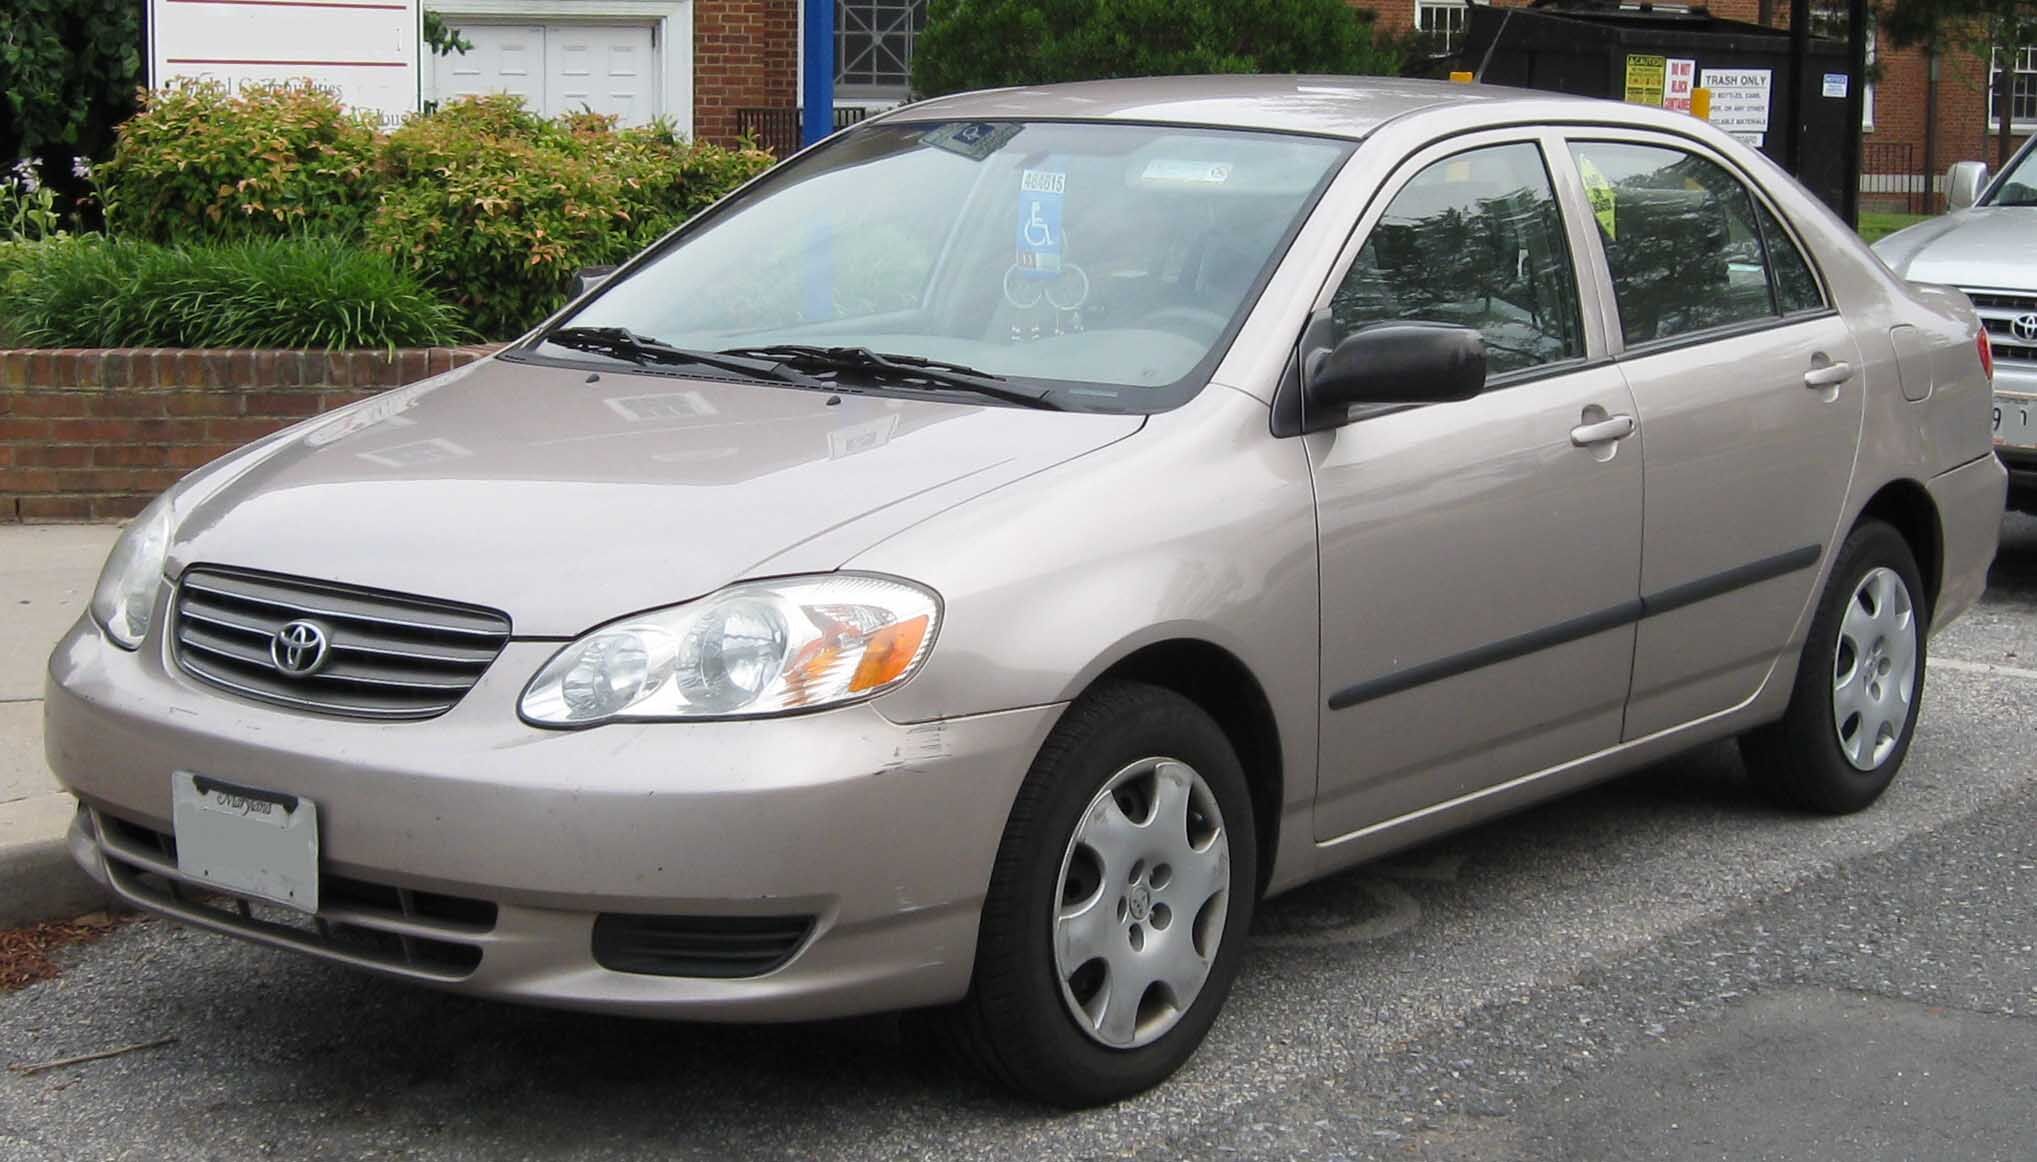 Toyota Corolla - Wikipedia